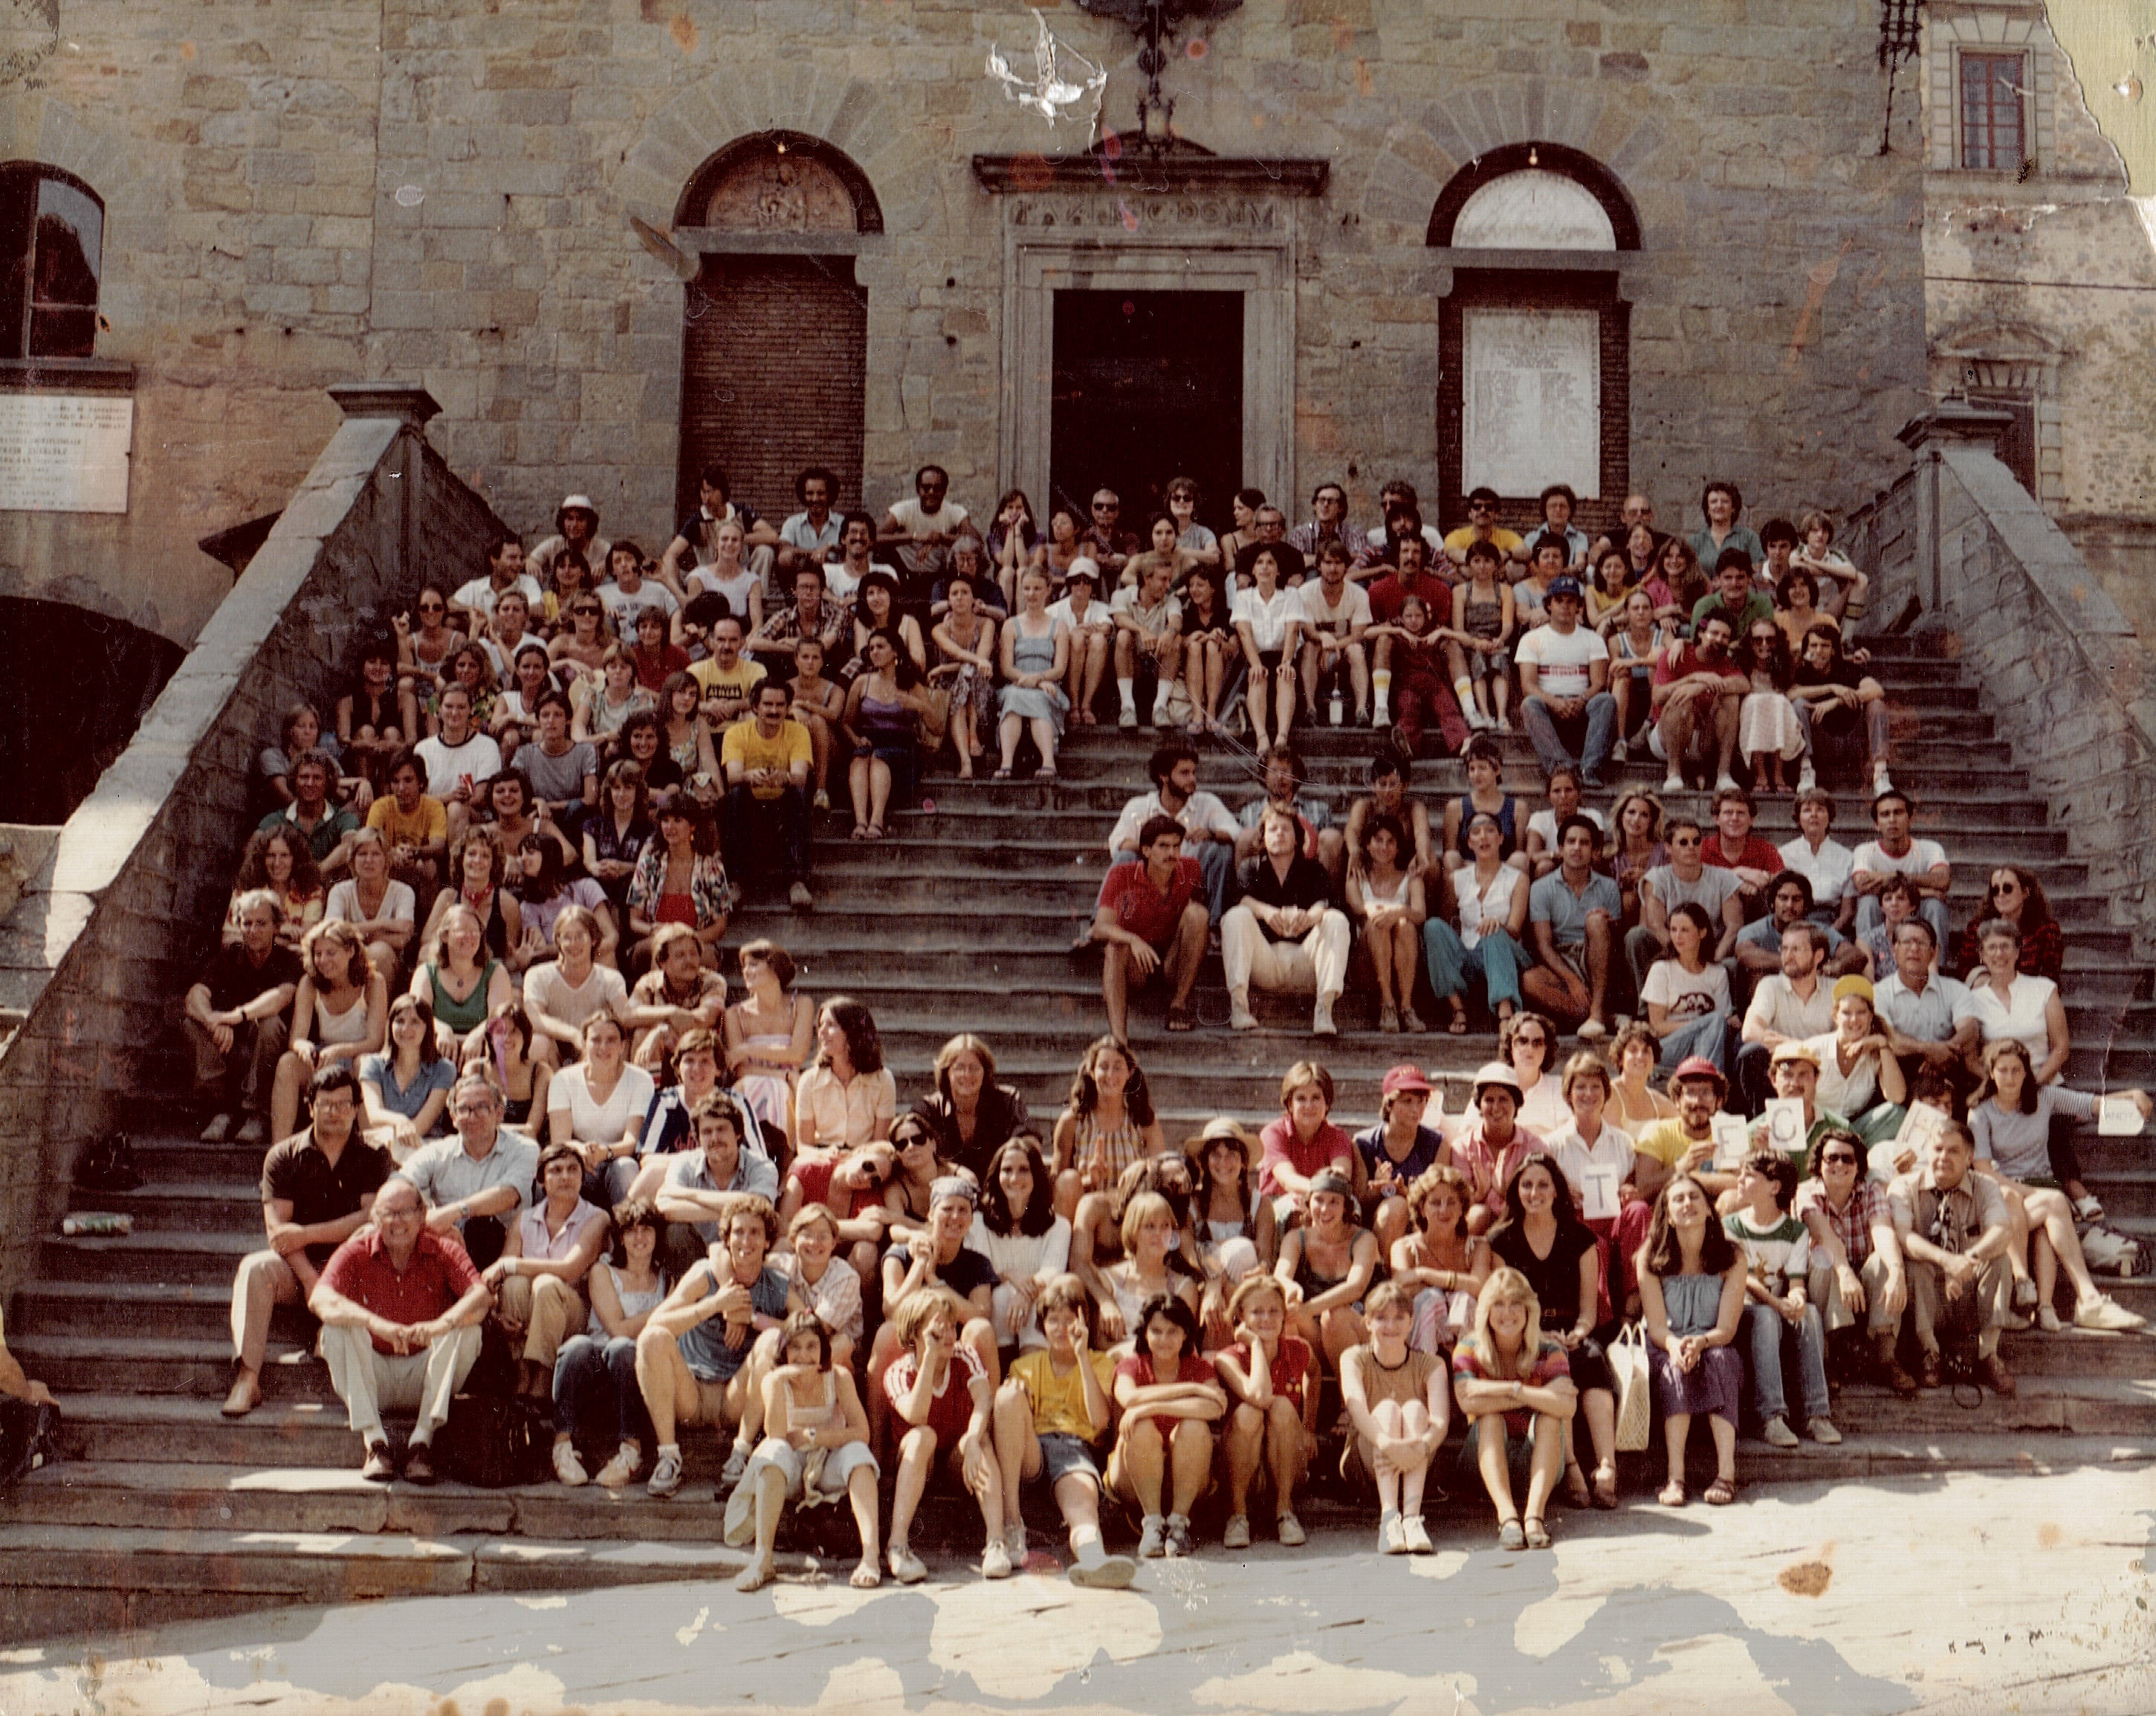 50 anni di ricordi fotografici tra Cortona e l’Università della Georgia in collaborazione con Cortona On The Move